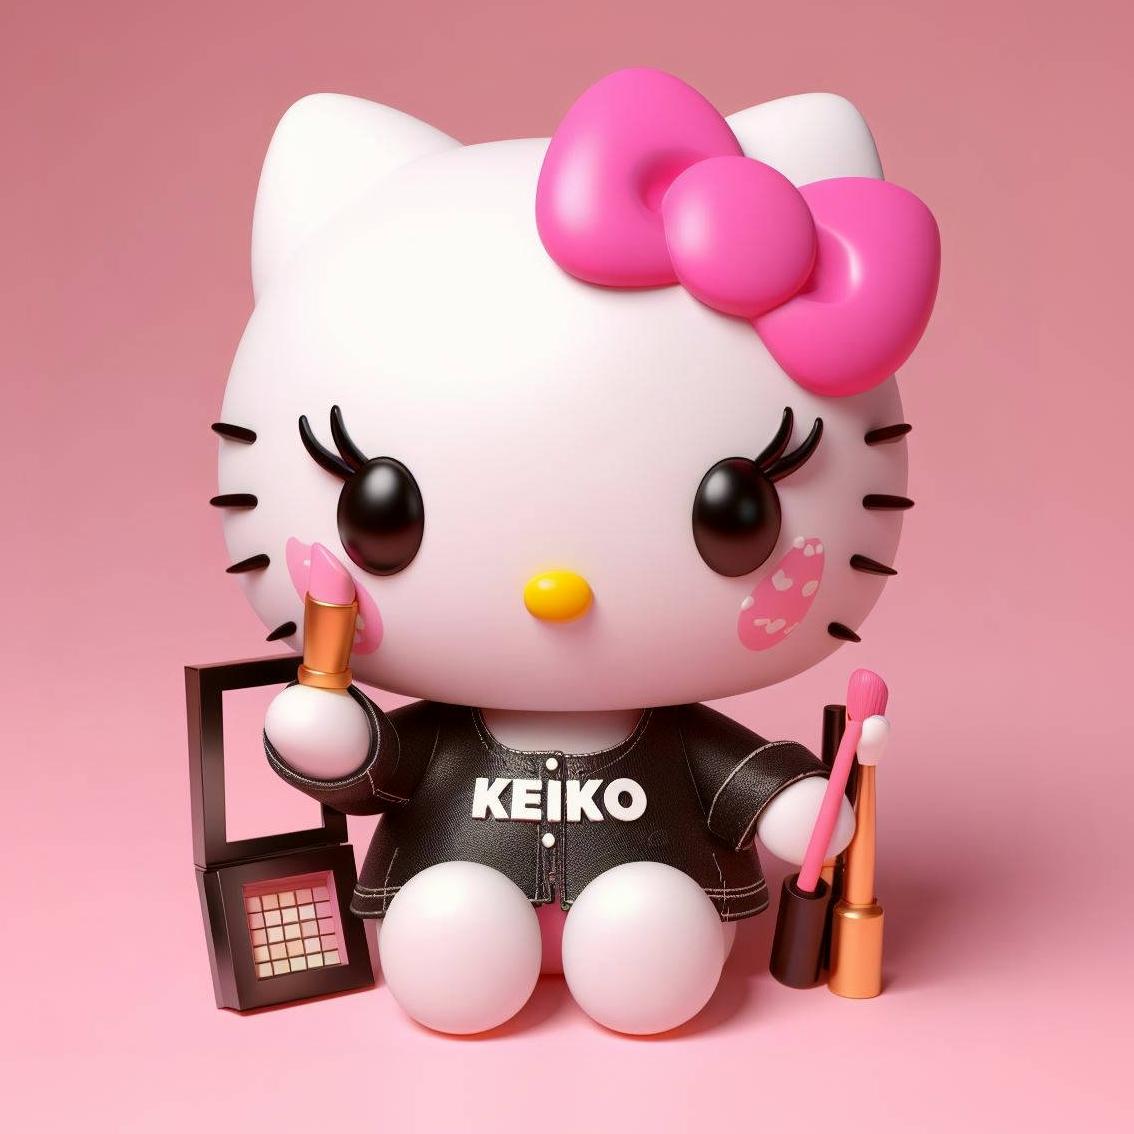 Keiko's Makeup